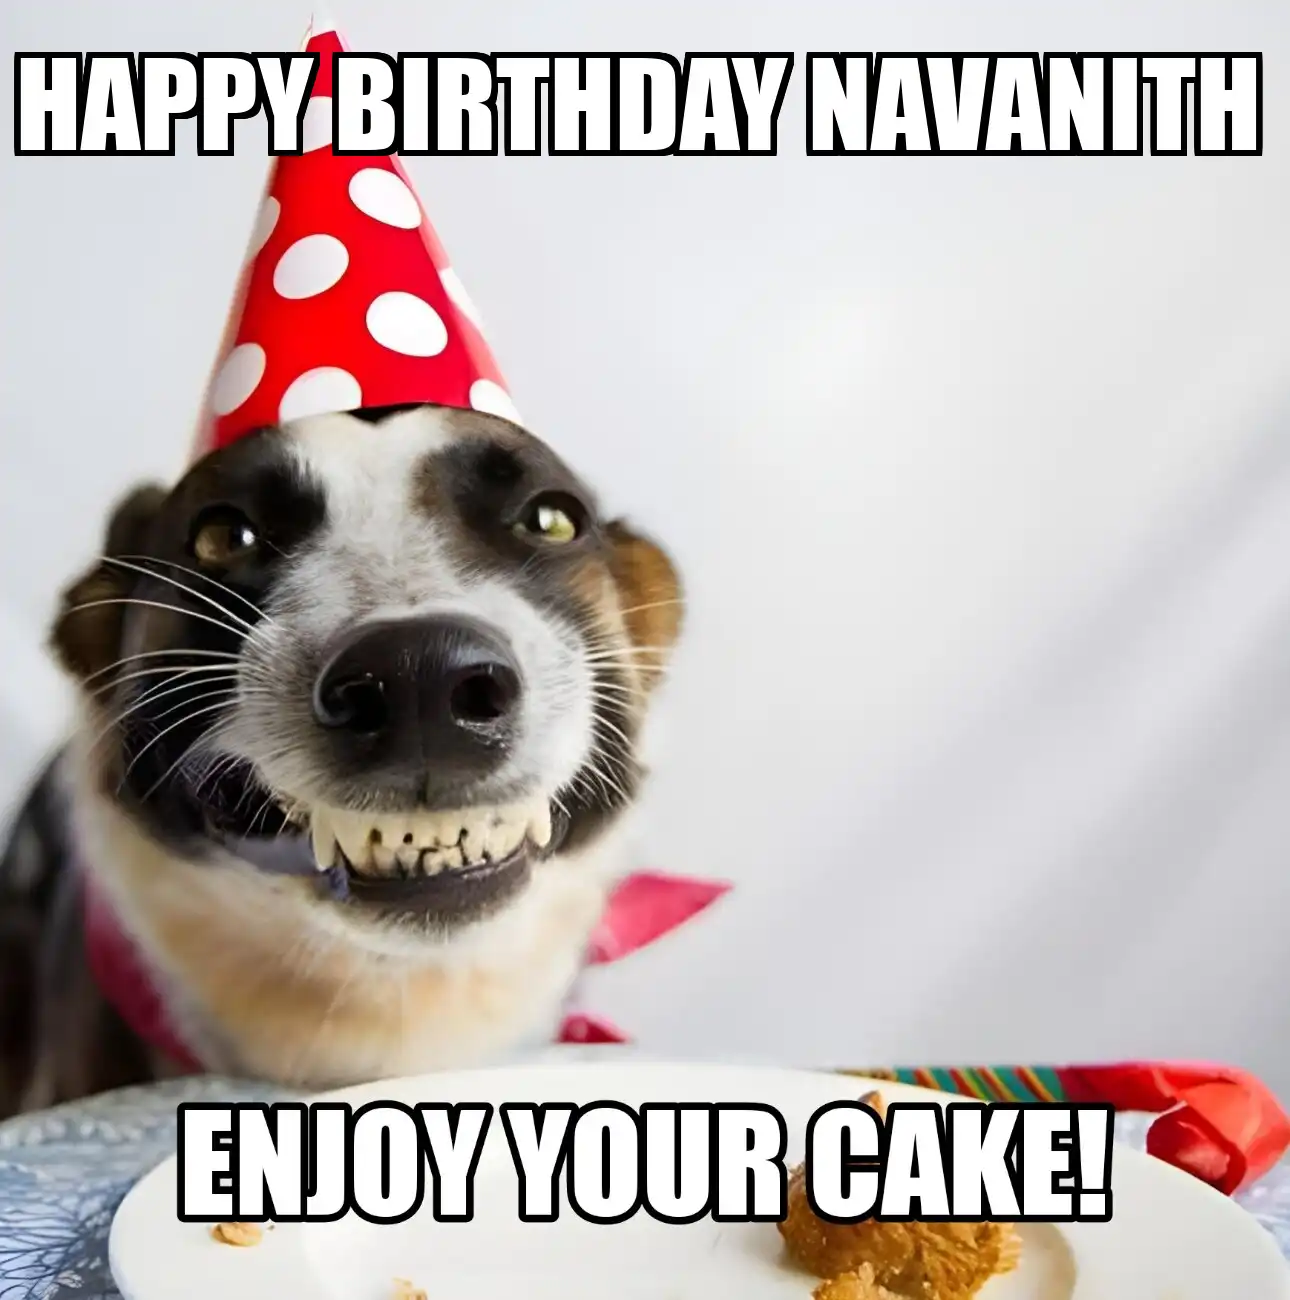 Happy Birthday Navanith Enjoy Your Cake Dog Meme